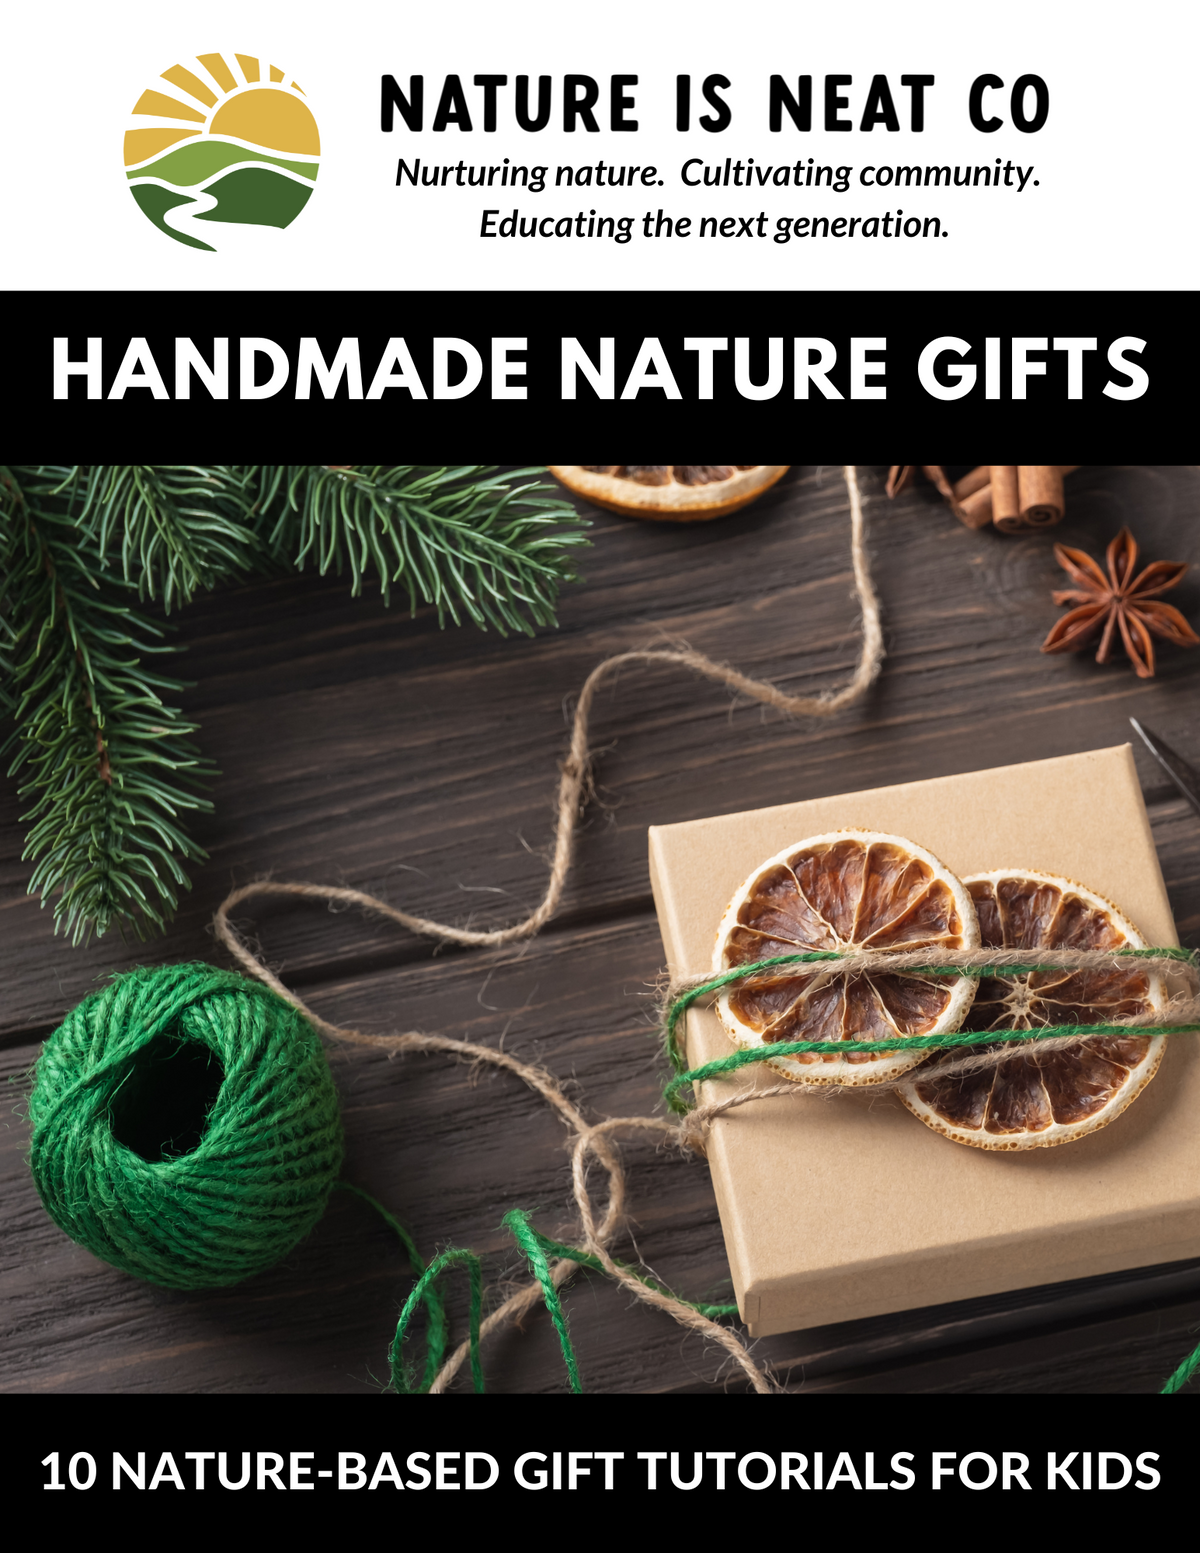 Handmade Nature Gifts Tutorial